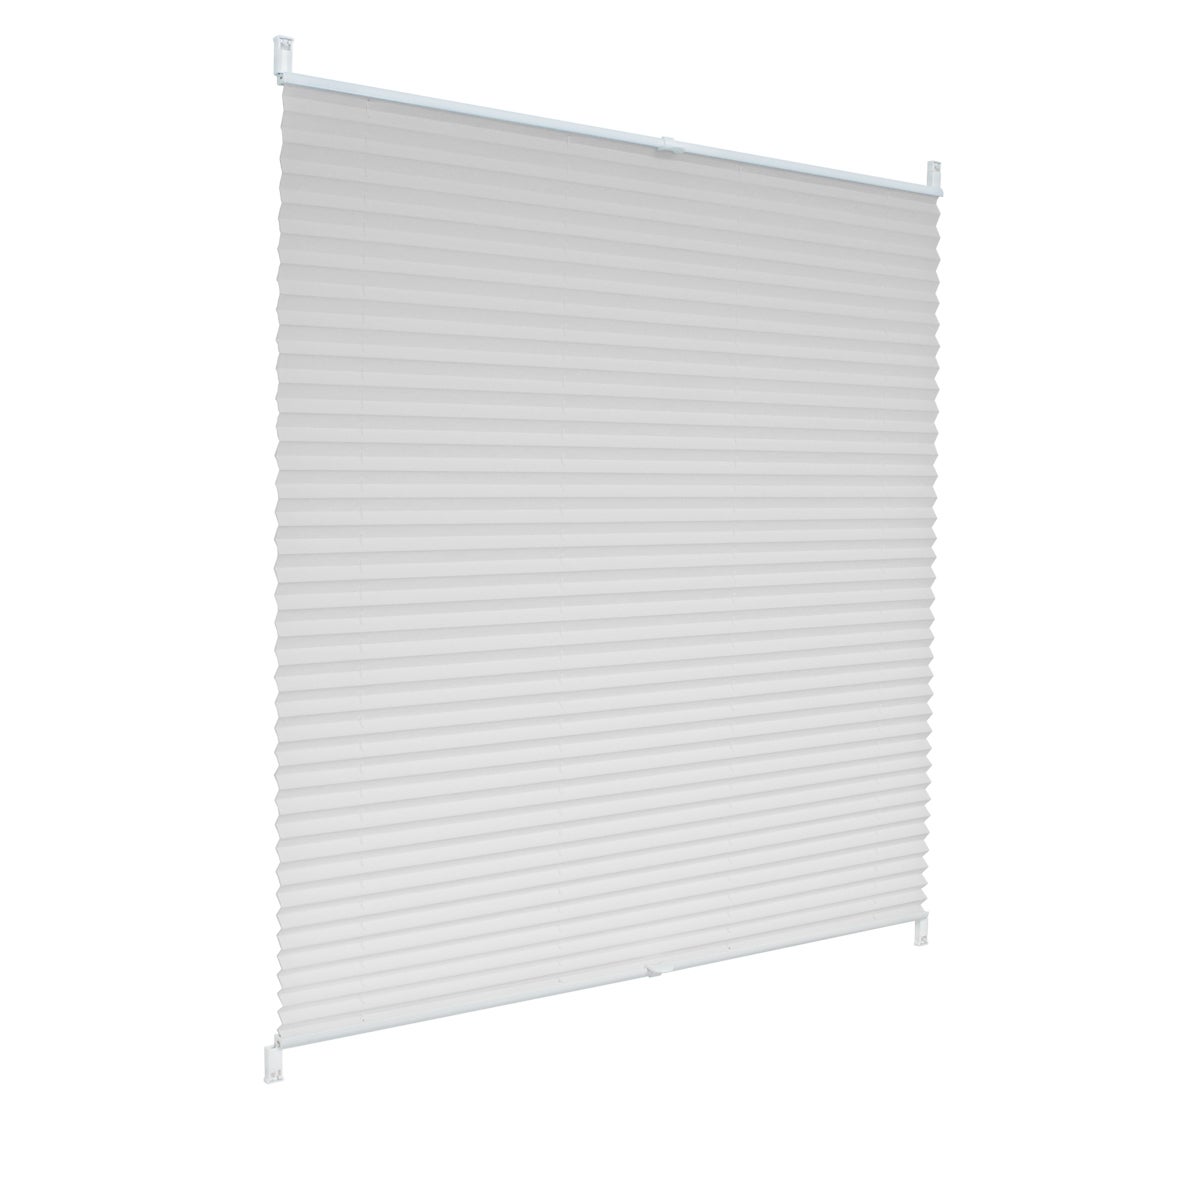 ECD Germany Plissee 100 x 200 cm - Weiß - Klemmfix - EasyFix - ohne Bohren - Sonnen- und Sichtschutz - für Fenster und Tür - inkl. Befestigungsmaterial - Jalousie Faltrollo Fensterrollo Rollo